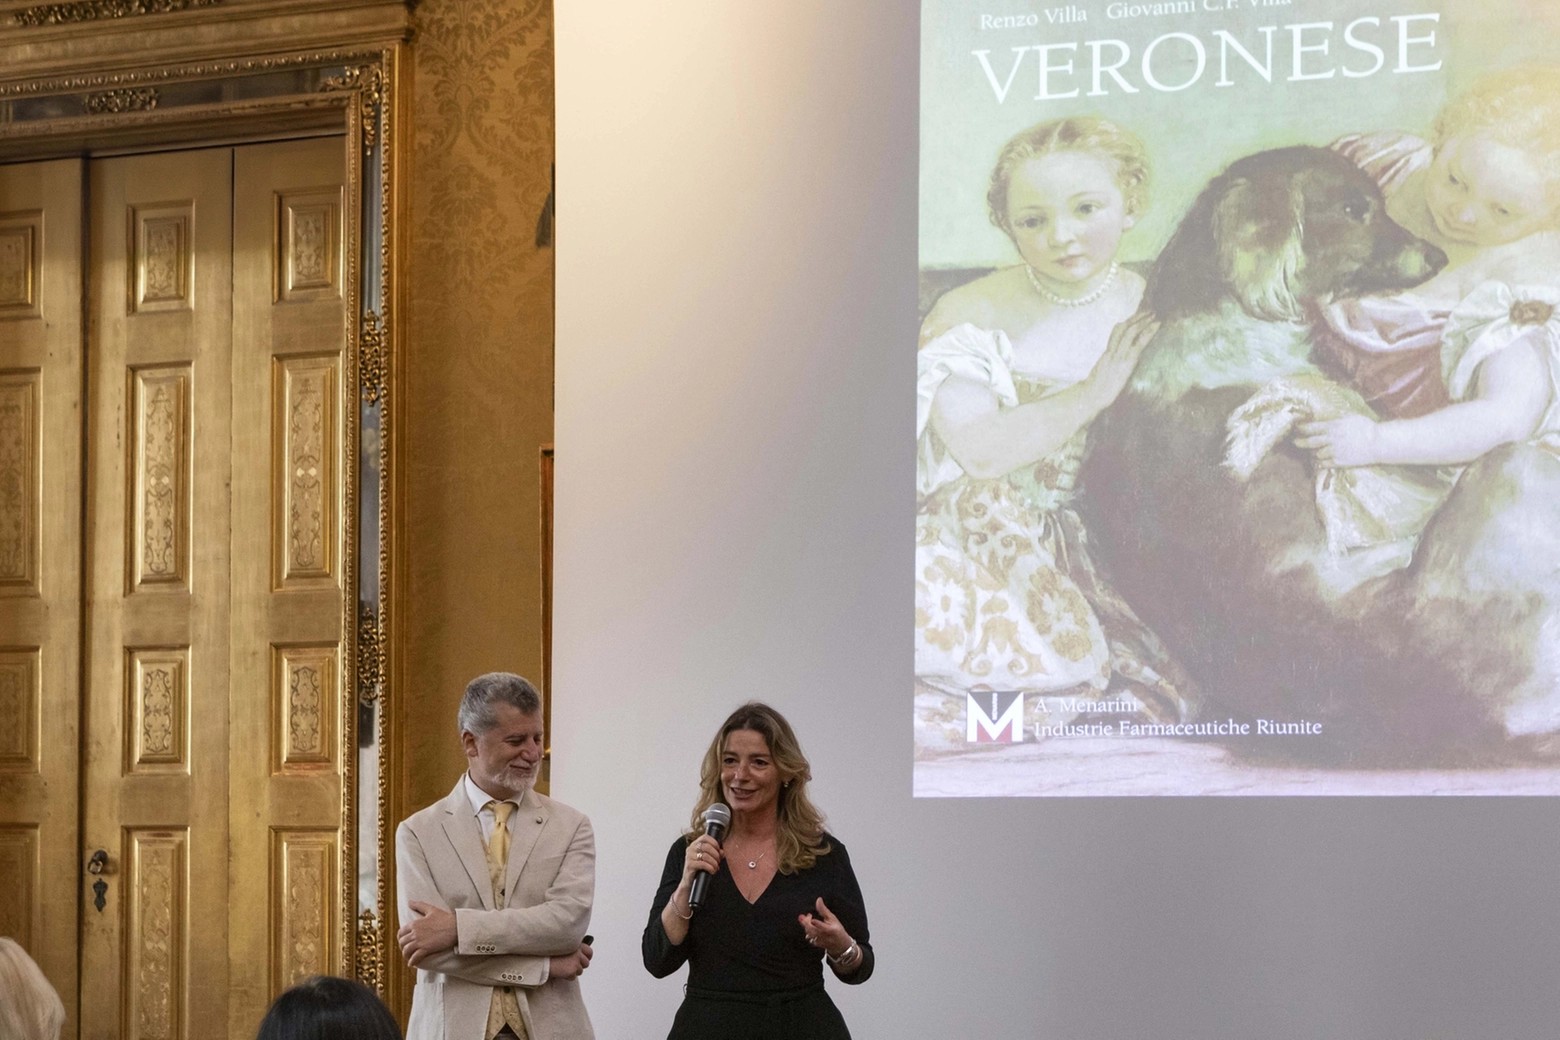 Giovanni Carlo Federico Villa e Valeria Speroni durante la presentazione del Volume d'Arte su Veronese a Palazzo Madama, a Torino